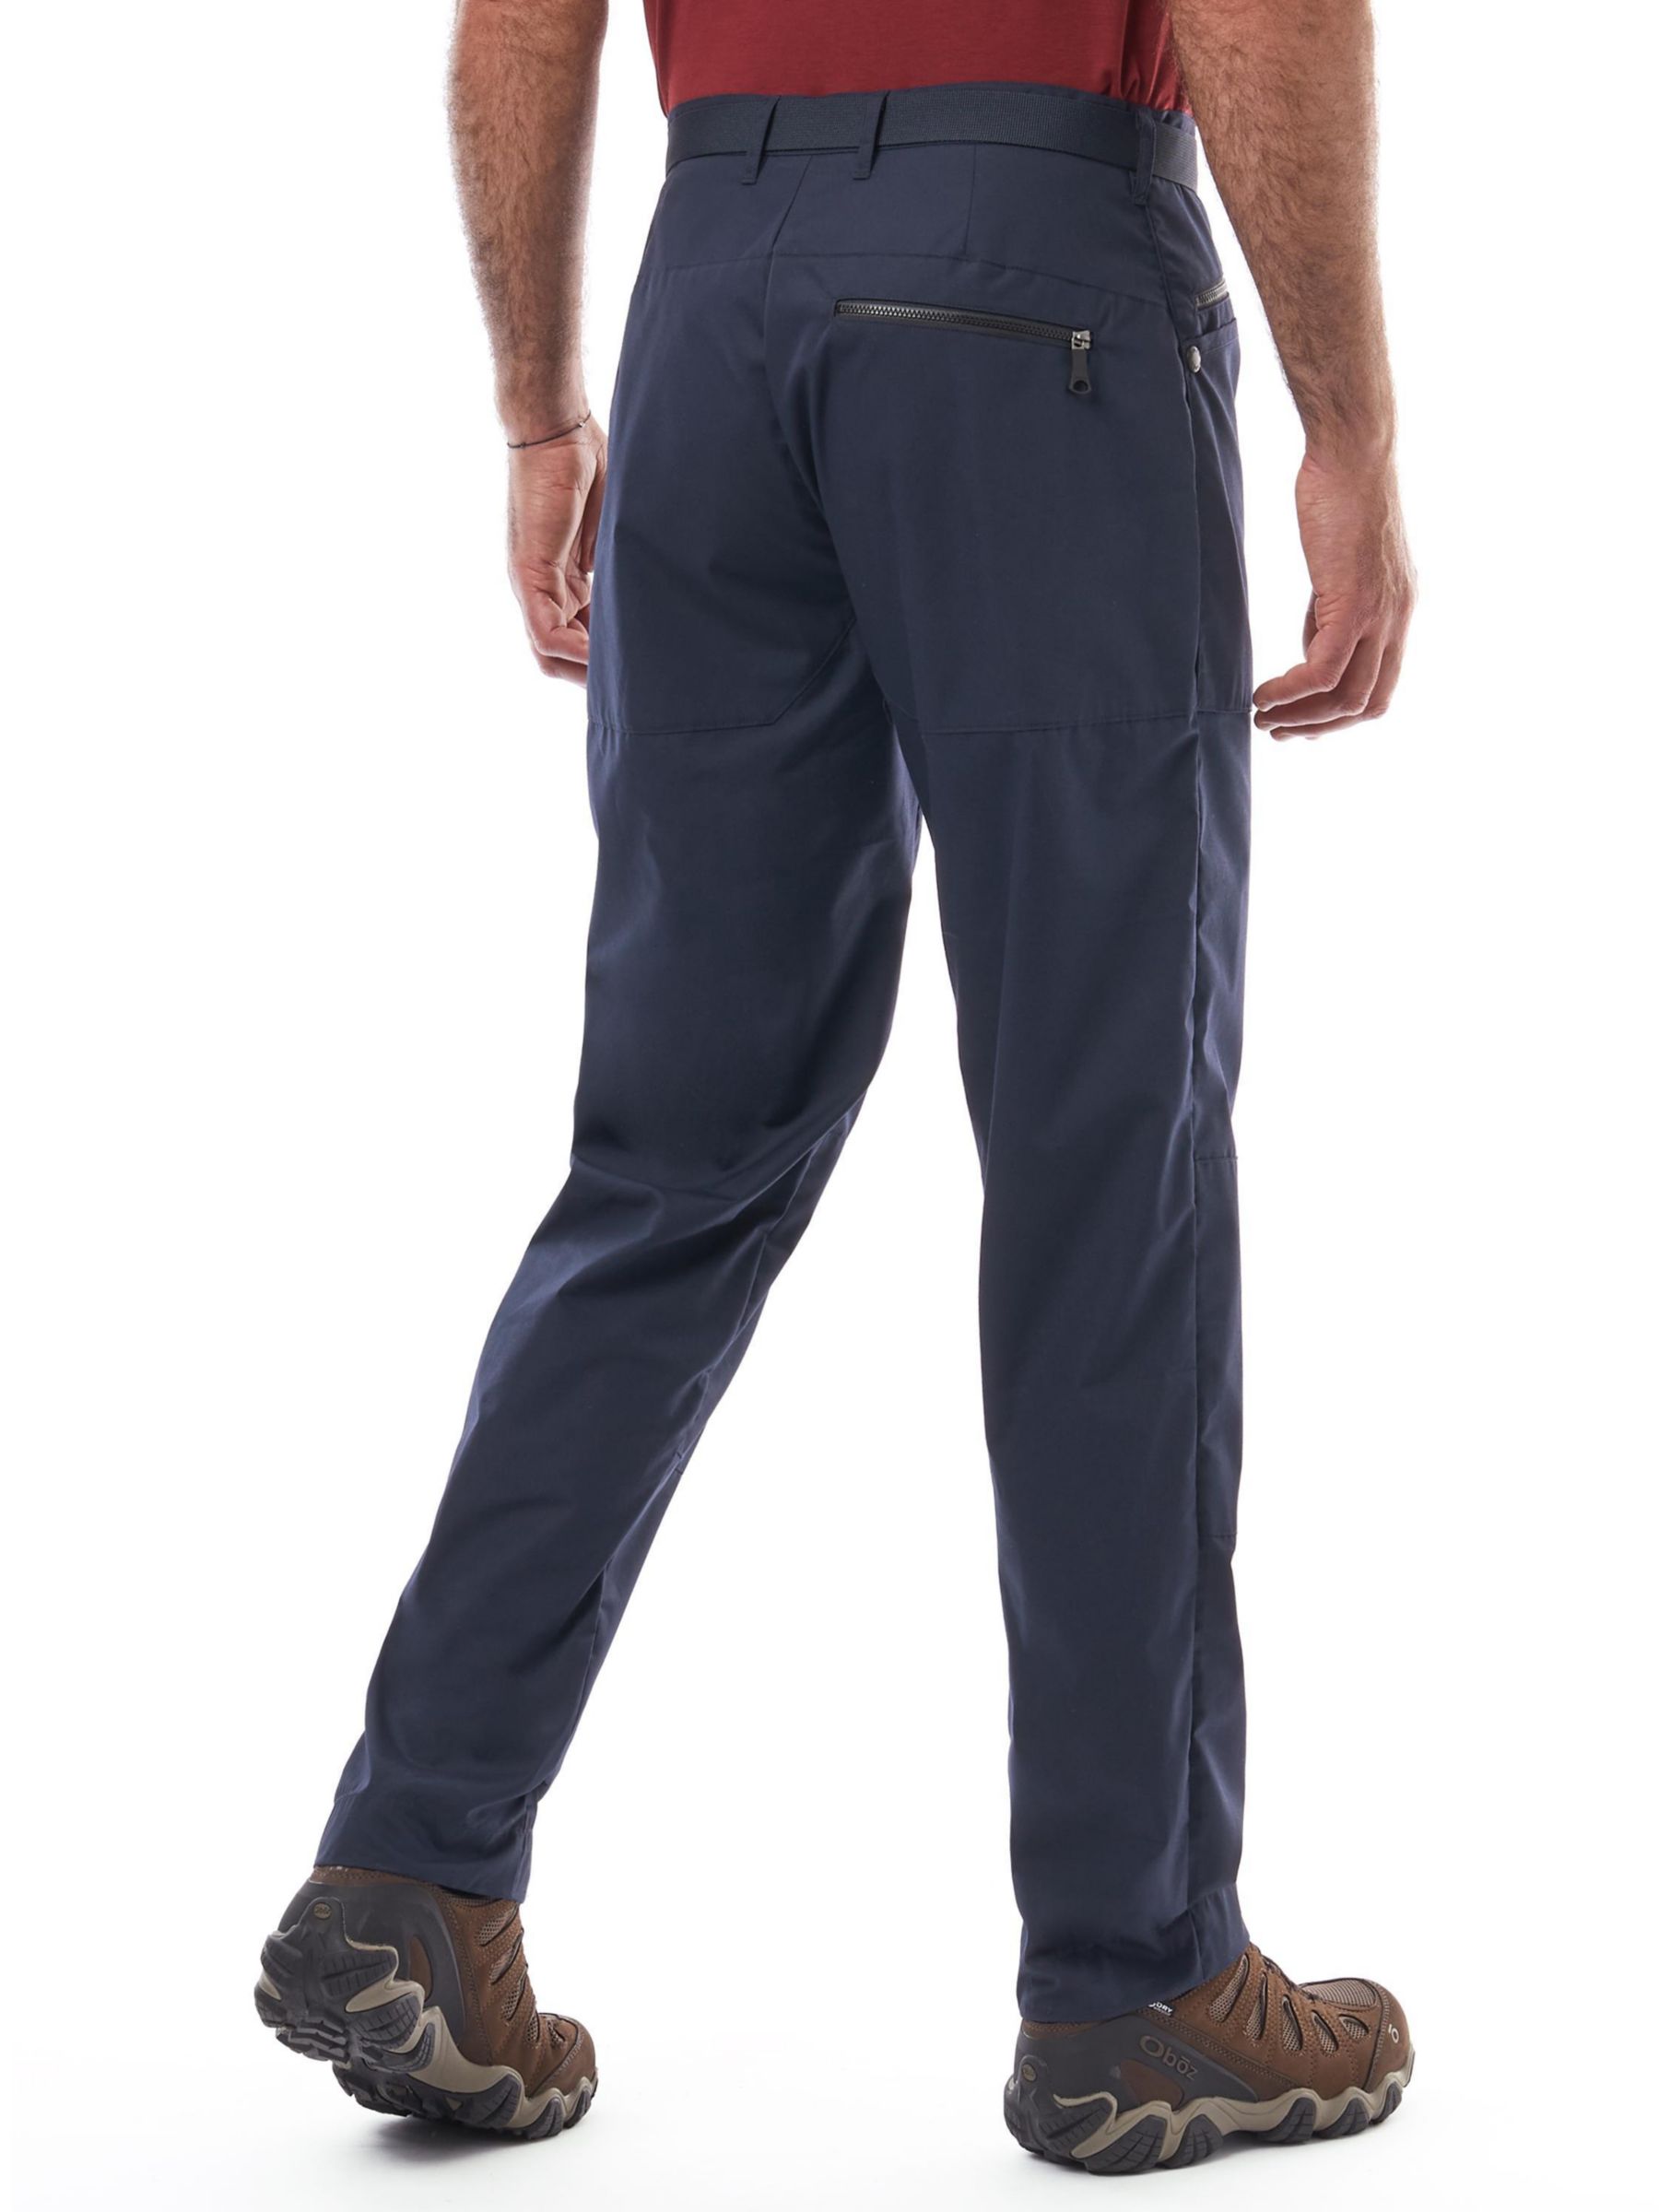 Rohan Bags Walking Trousers, True Navy, 40S